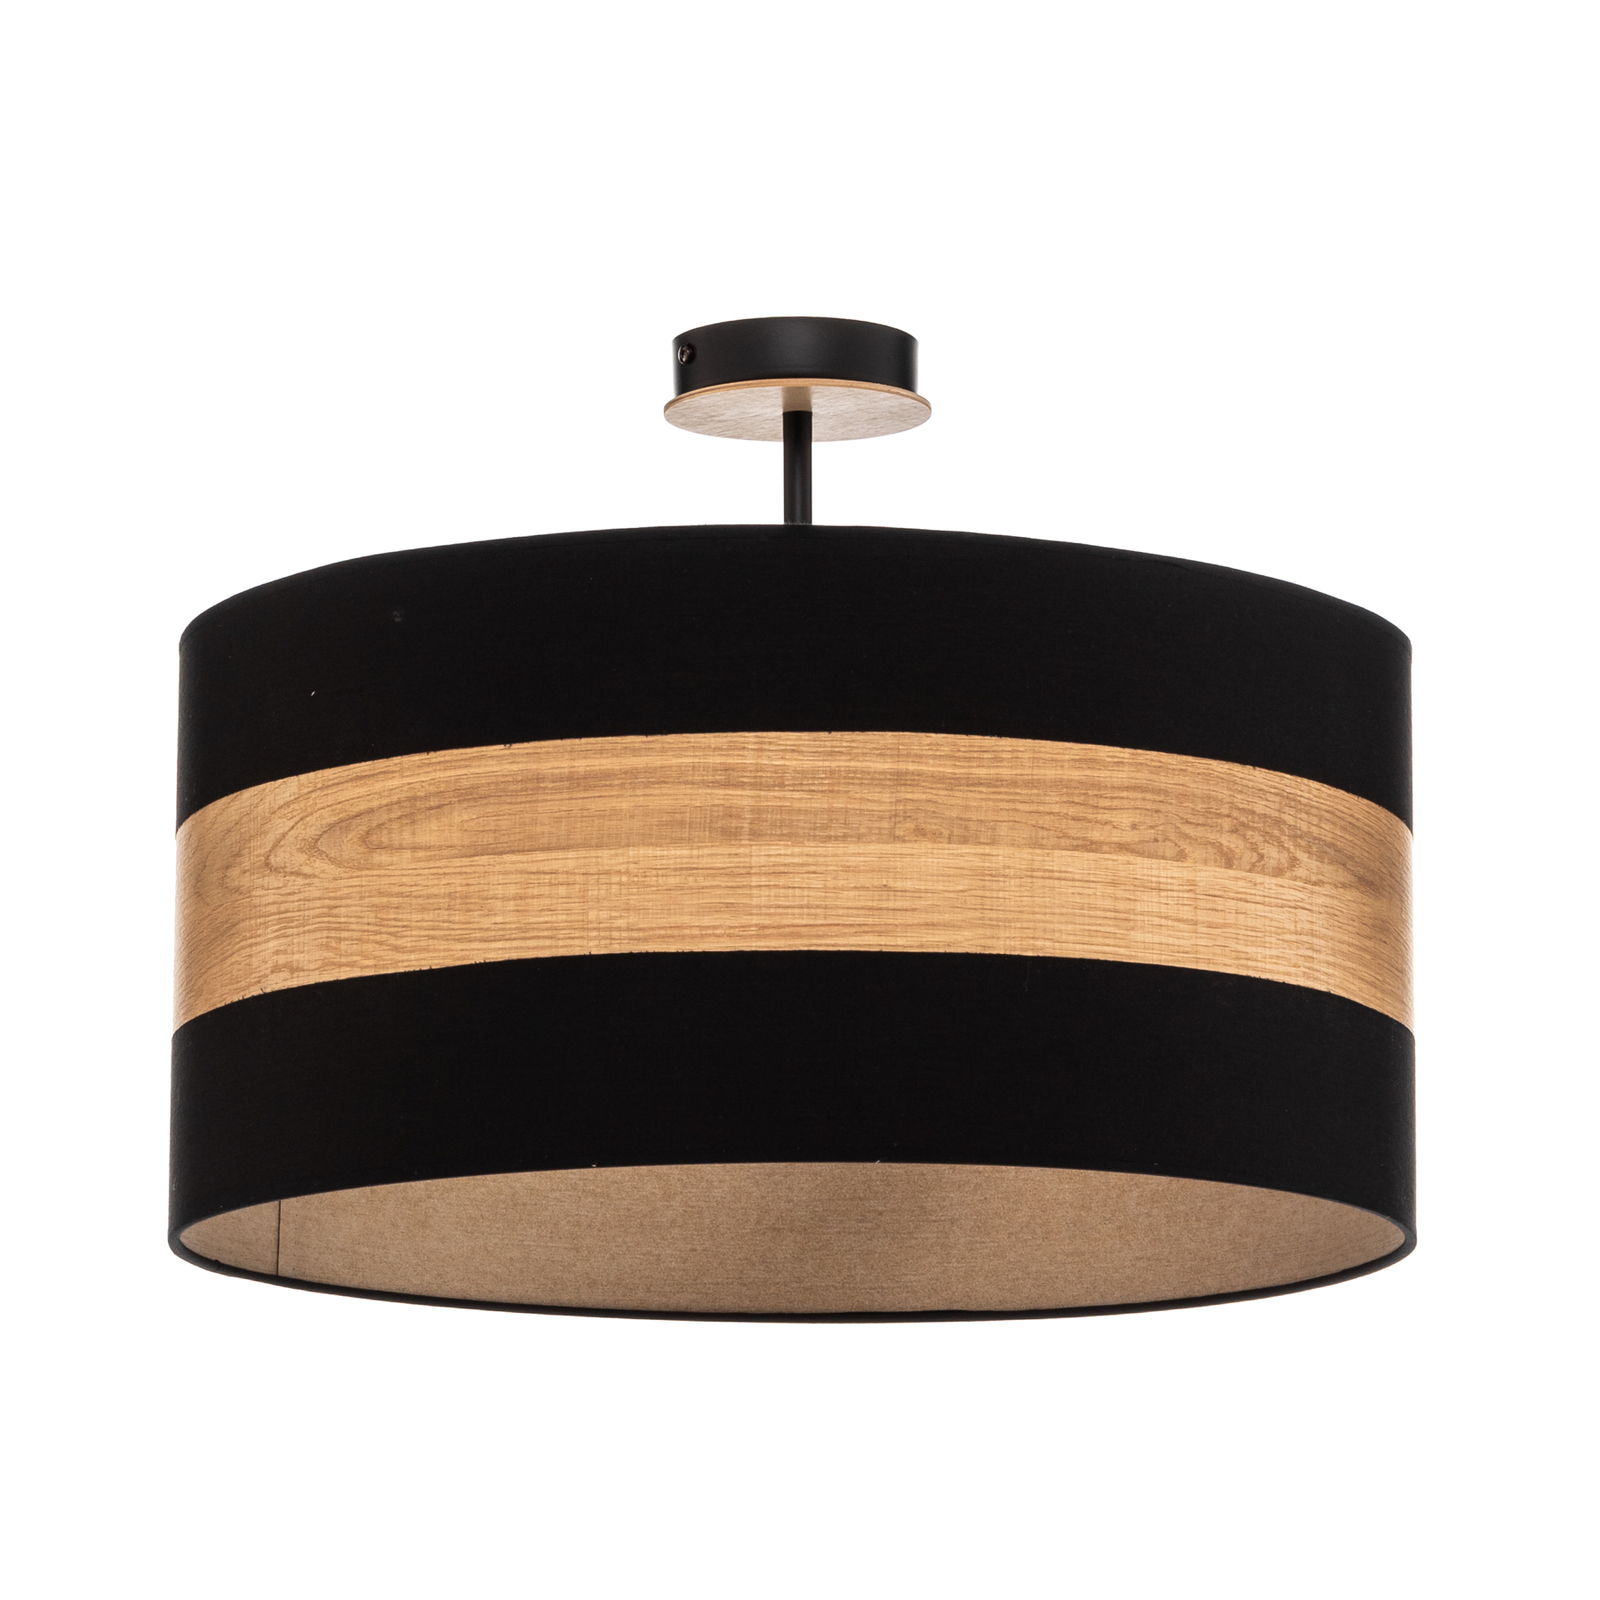 Plafondlamp Terra van hout en textiel, zwart